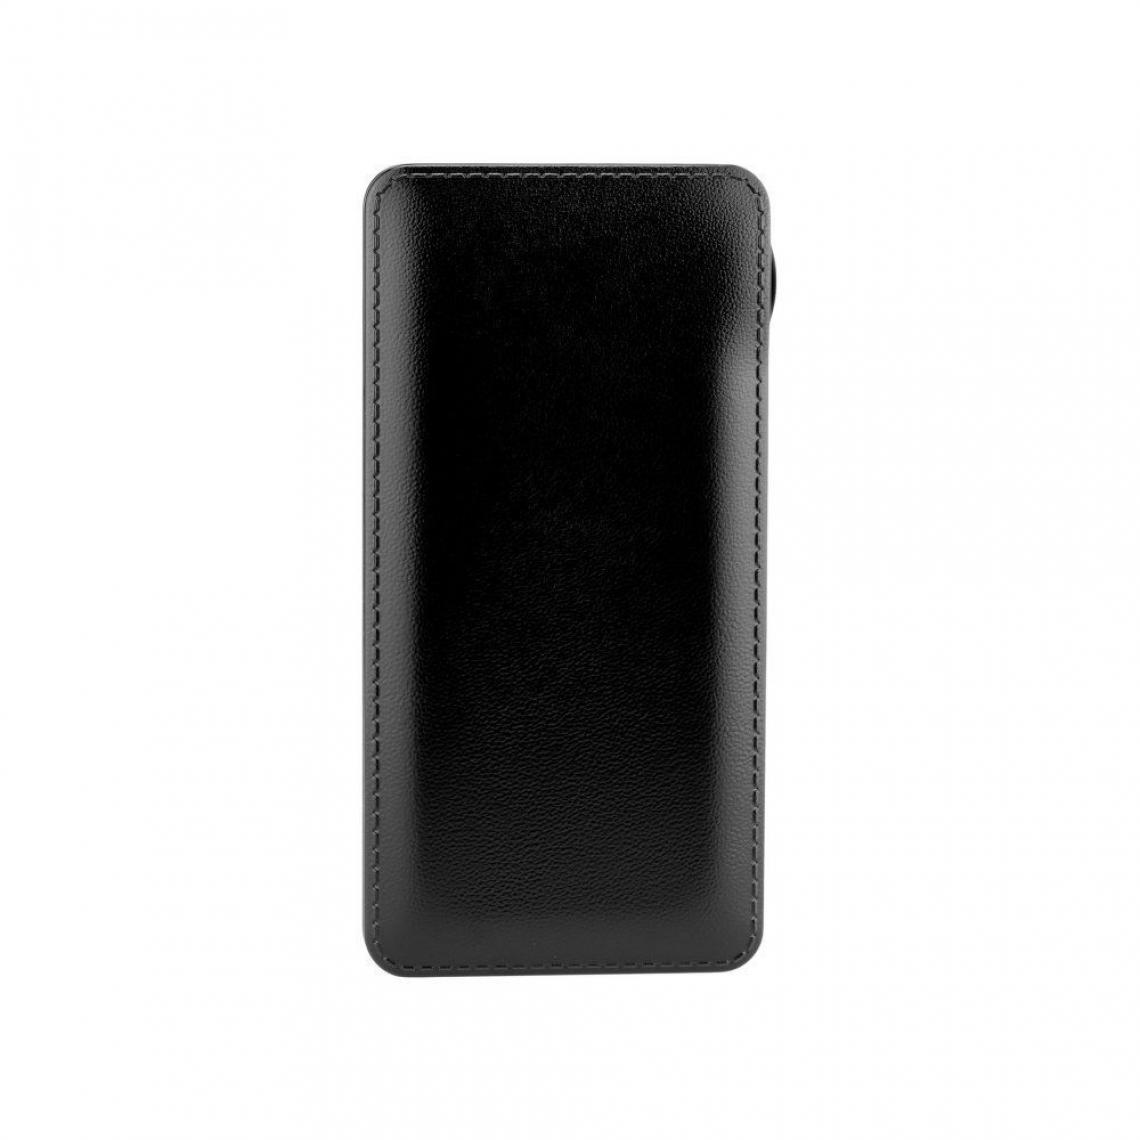 Ozzzo - Chargeur batterie externe 30000 mAh powerbank ozzzo noir pour Sharp B10 - Autres accessoires smartphone